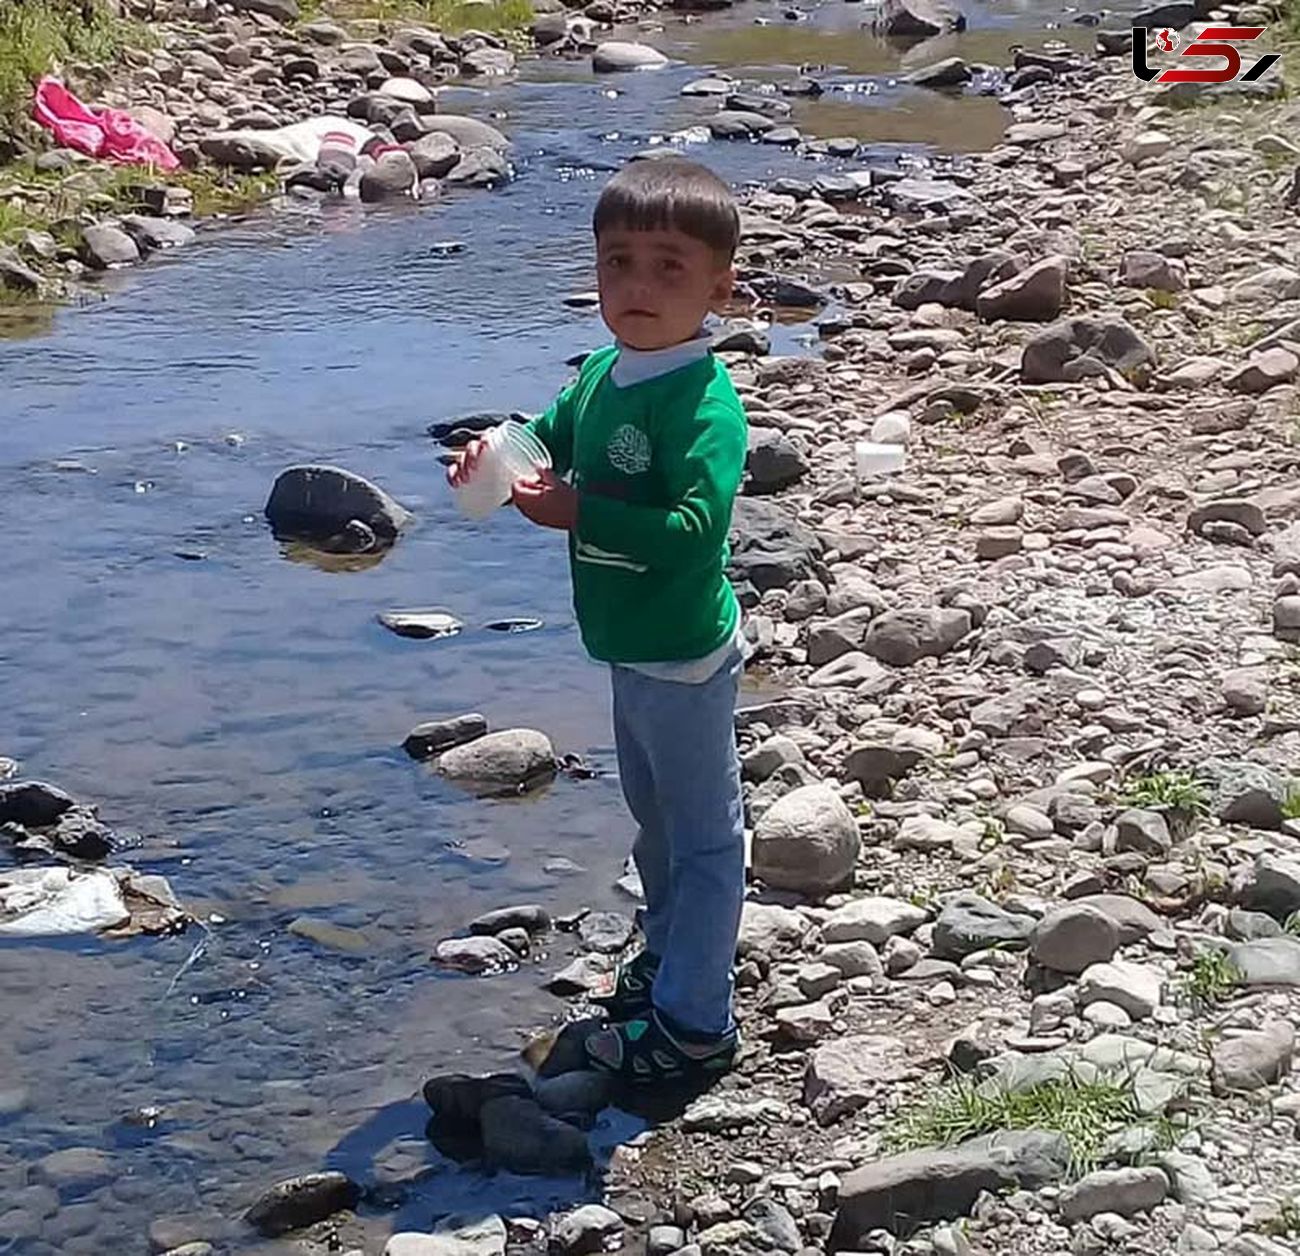 قتل هولناک پسر 4 ساله در بستان آباد / جنازه تکه تکه امیرعلی پیدا شد + عکس